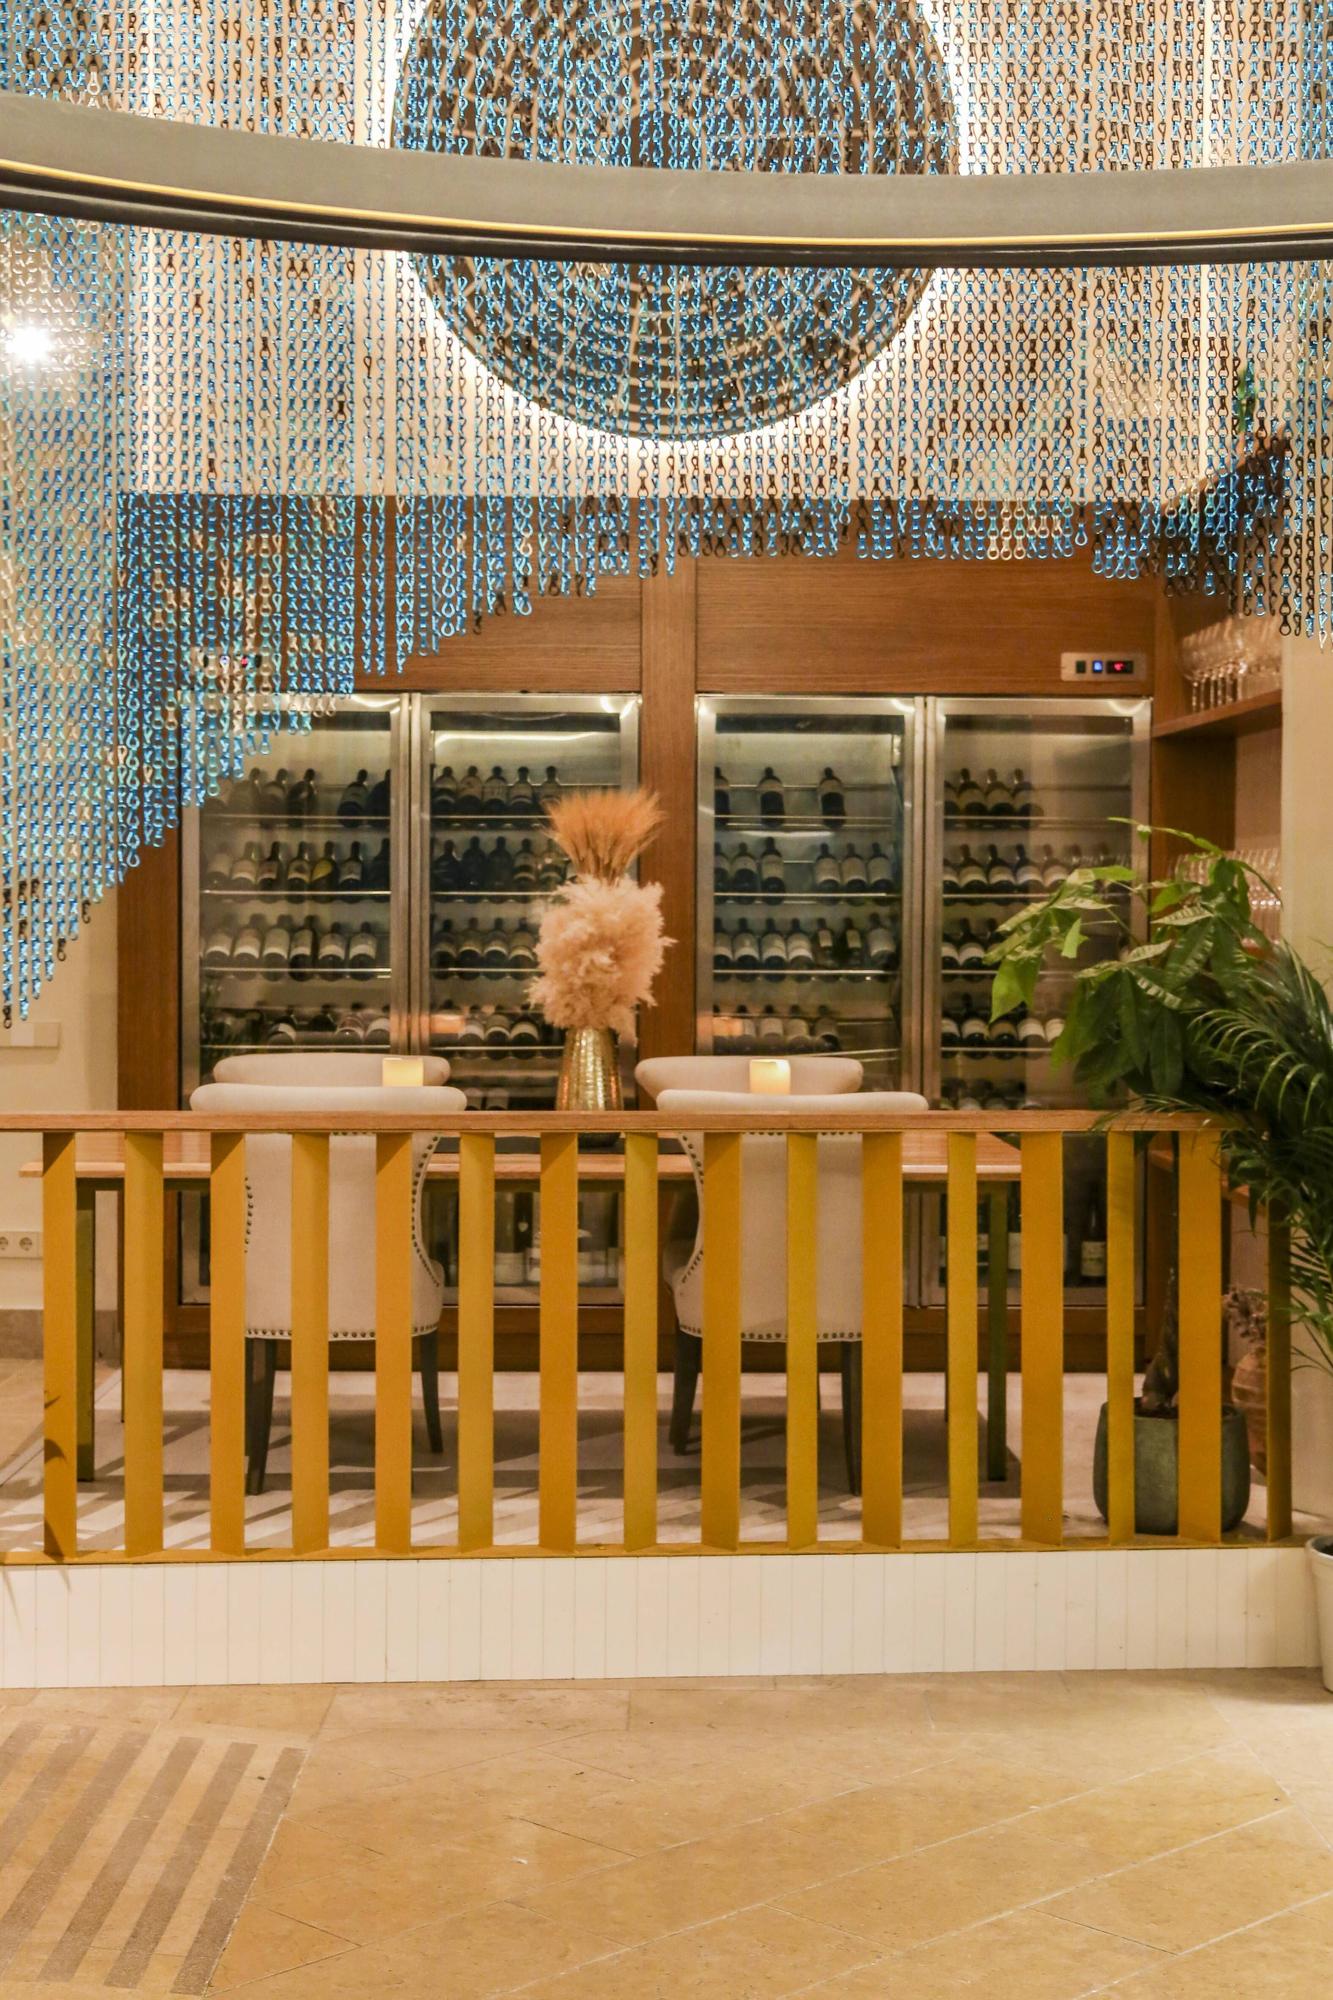 Schlemmen auf hohem Niveau im Sternerestaurant von Andreu Genestra